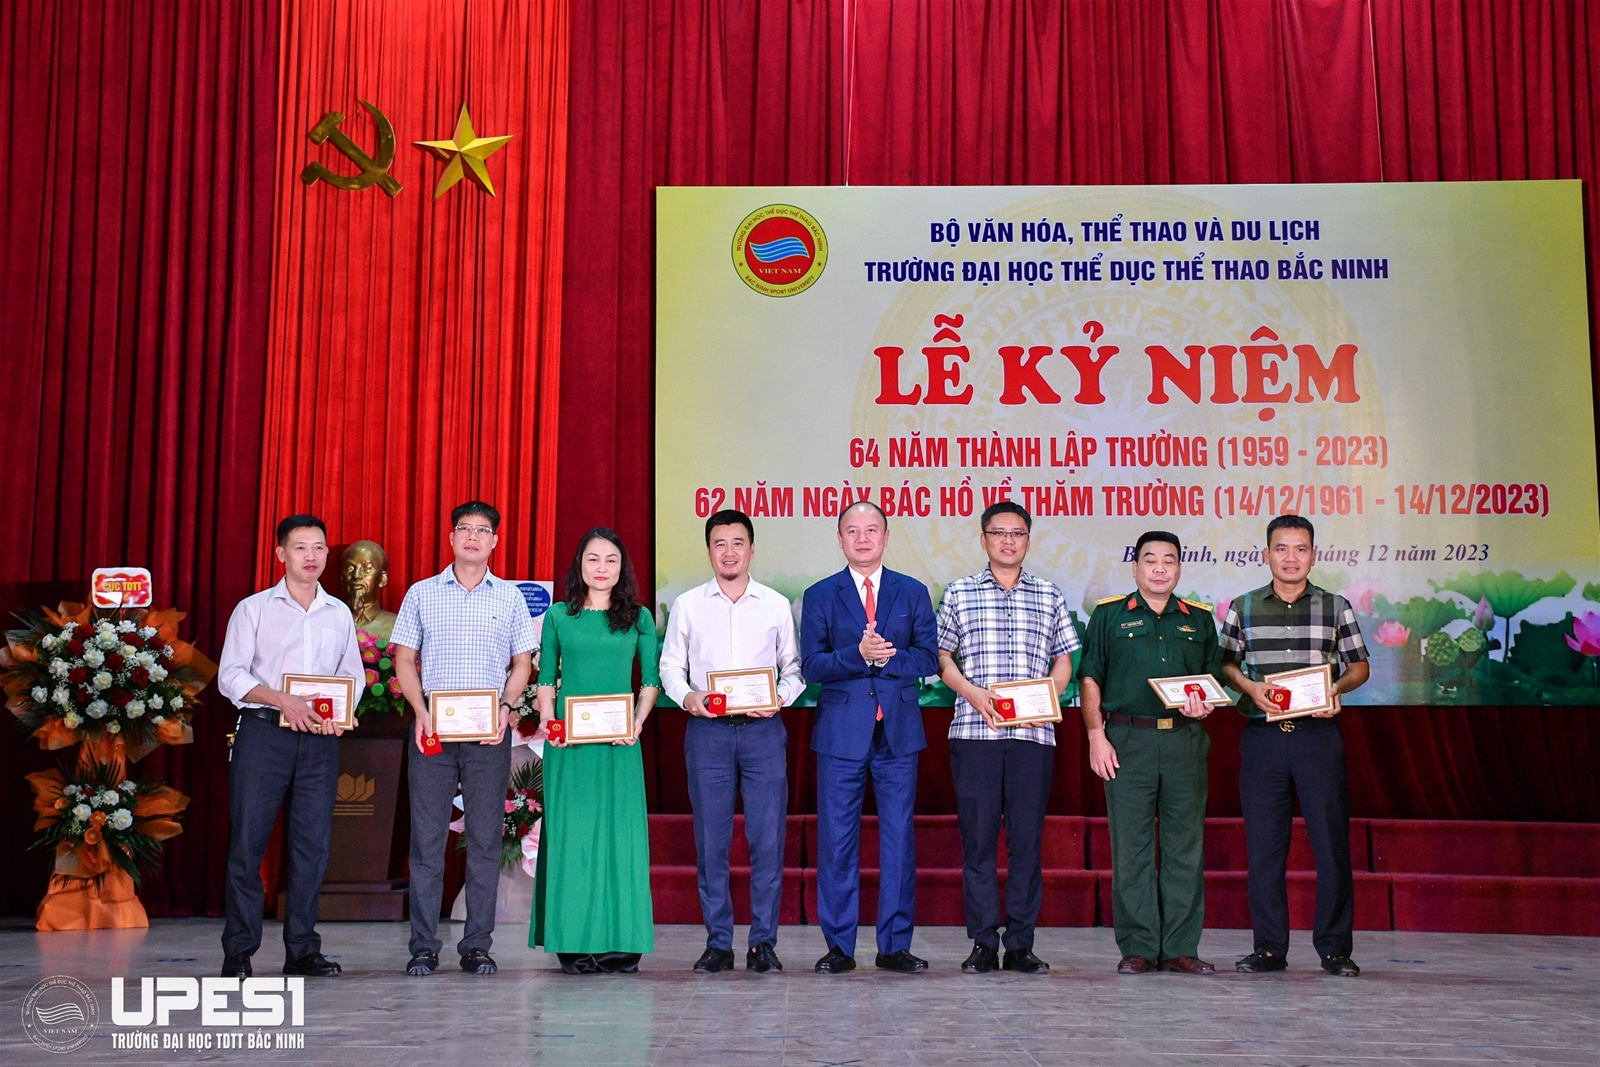 Trường Đại học TDTT Bắc Ninh tổ chức thành công Lễ Kỷ niệm 64 năm thành lập Trường, 62 năm ngày Bác Hồ về thăm Trường